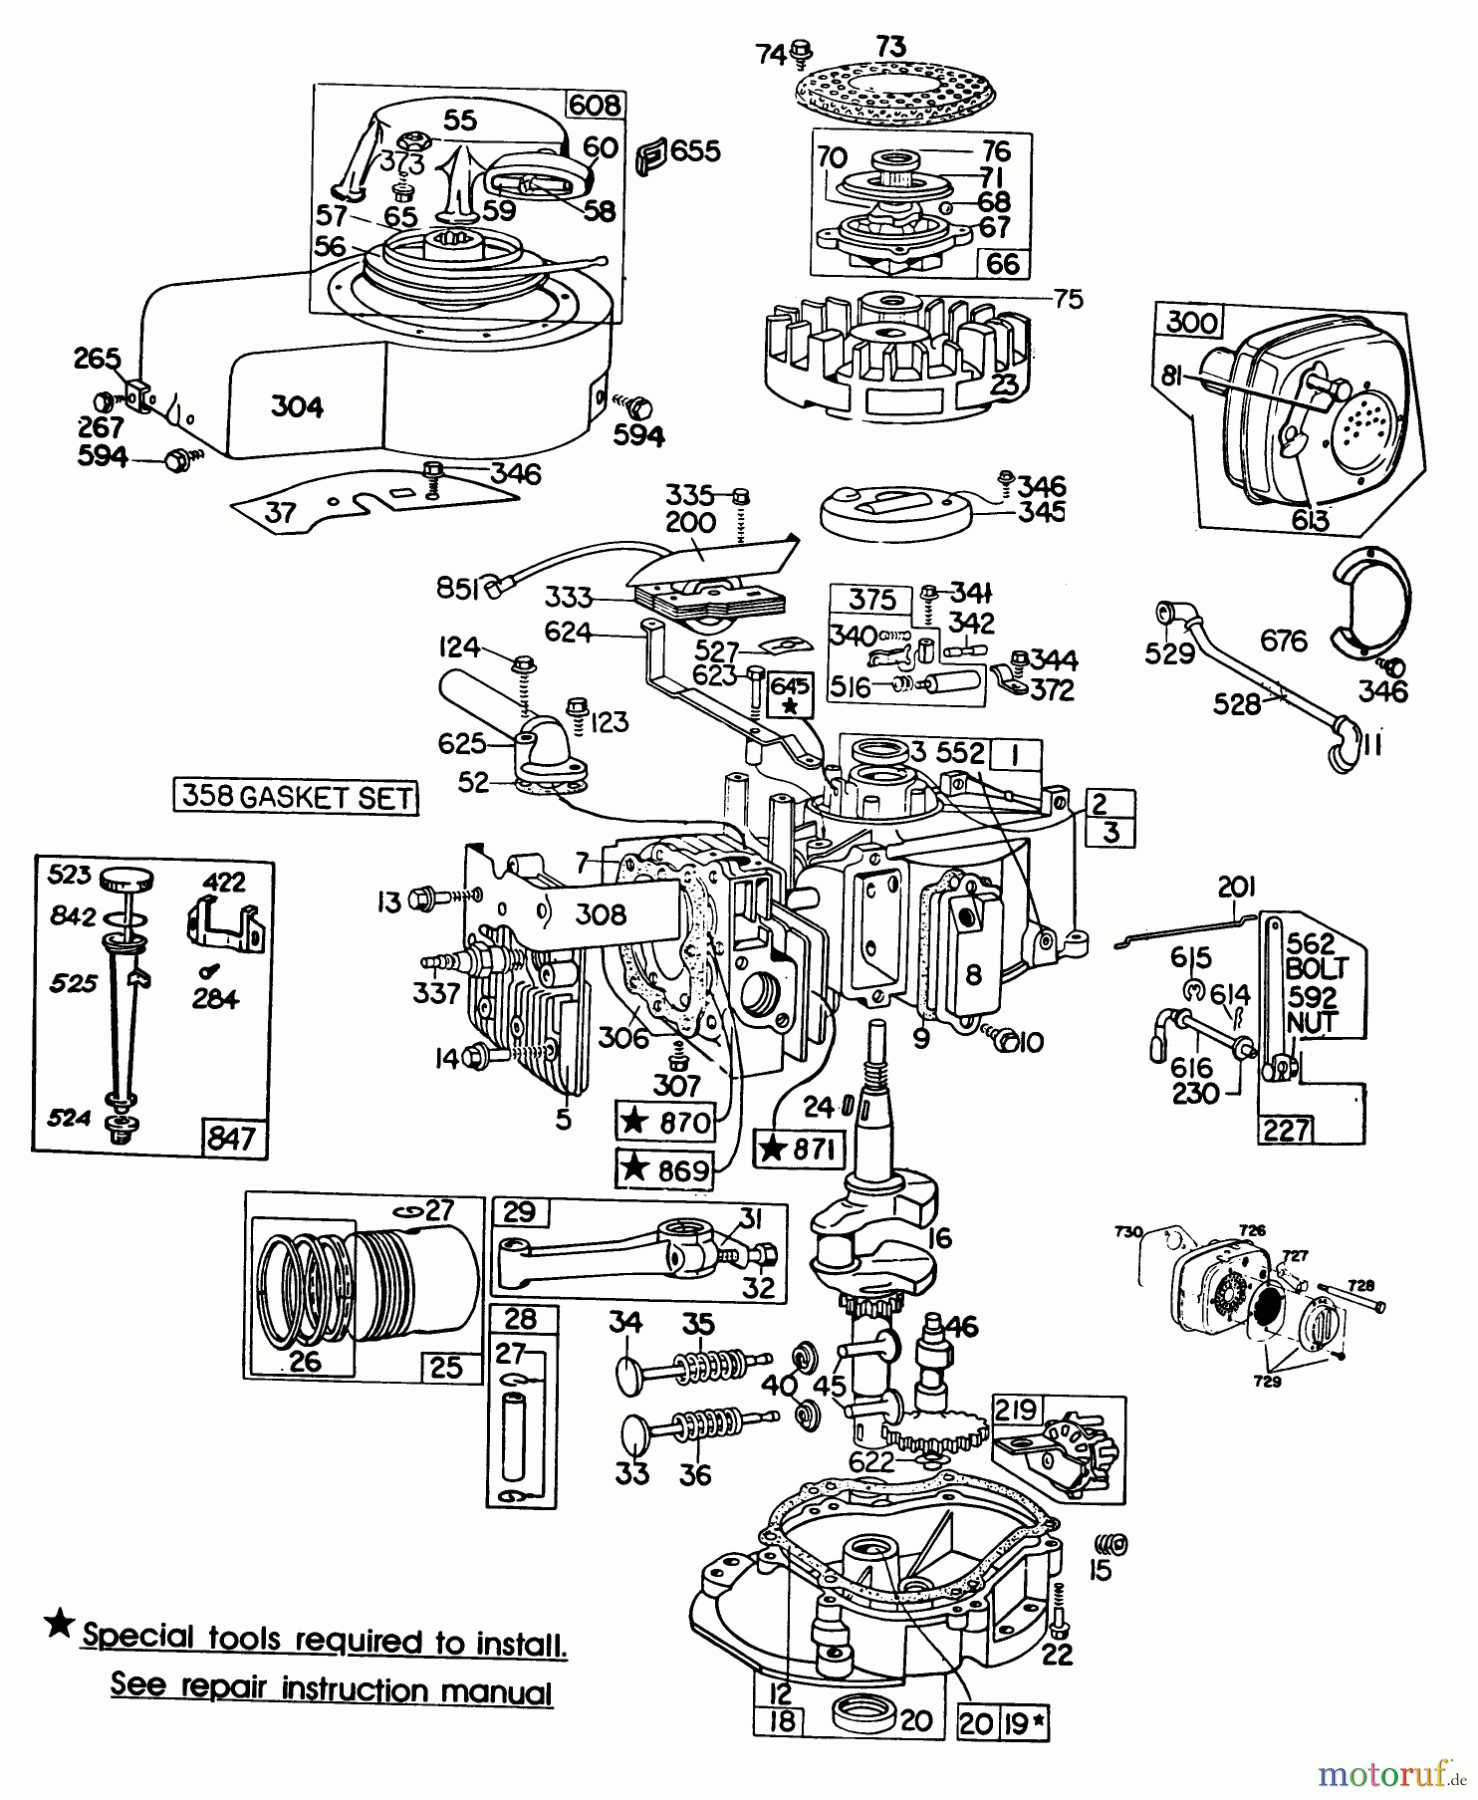  Toro Neu Mowers, Walk-Behind Seite 2 23158 - Toro Lawnmower, 1981 (1000001-1999999) ENGINE BRIGGS & STRATTON MODEL 130902-0543-01 #1